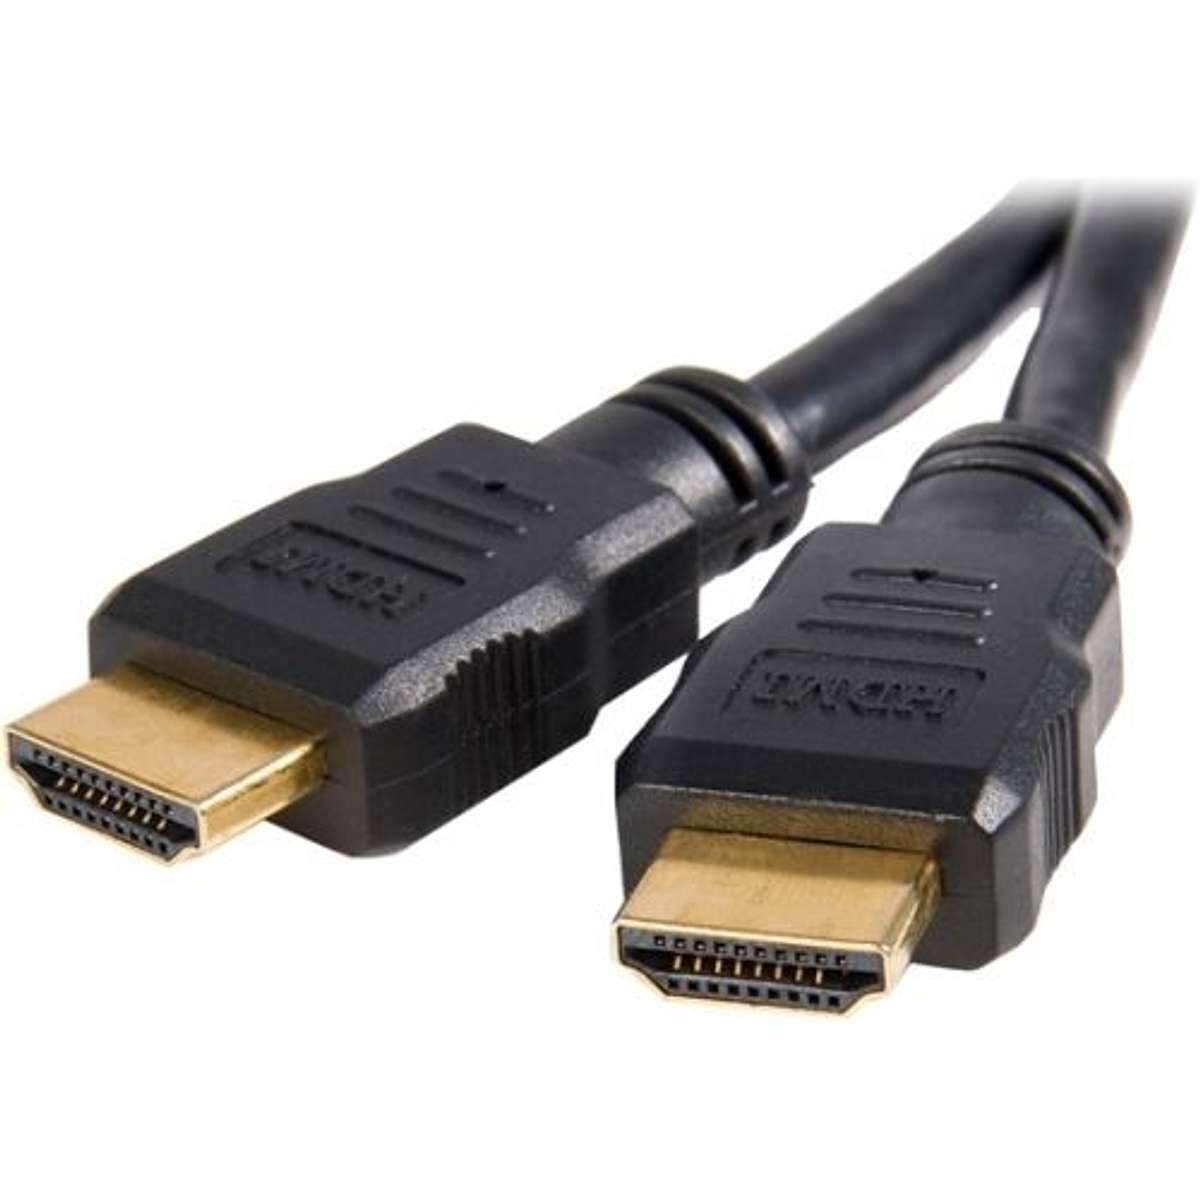 Tipos de cables HDMI: cuáles hay y en qué se diferencian